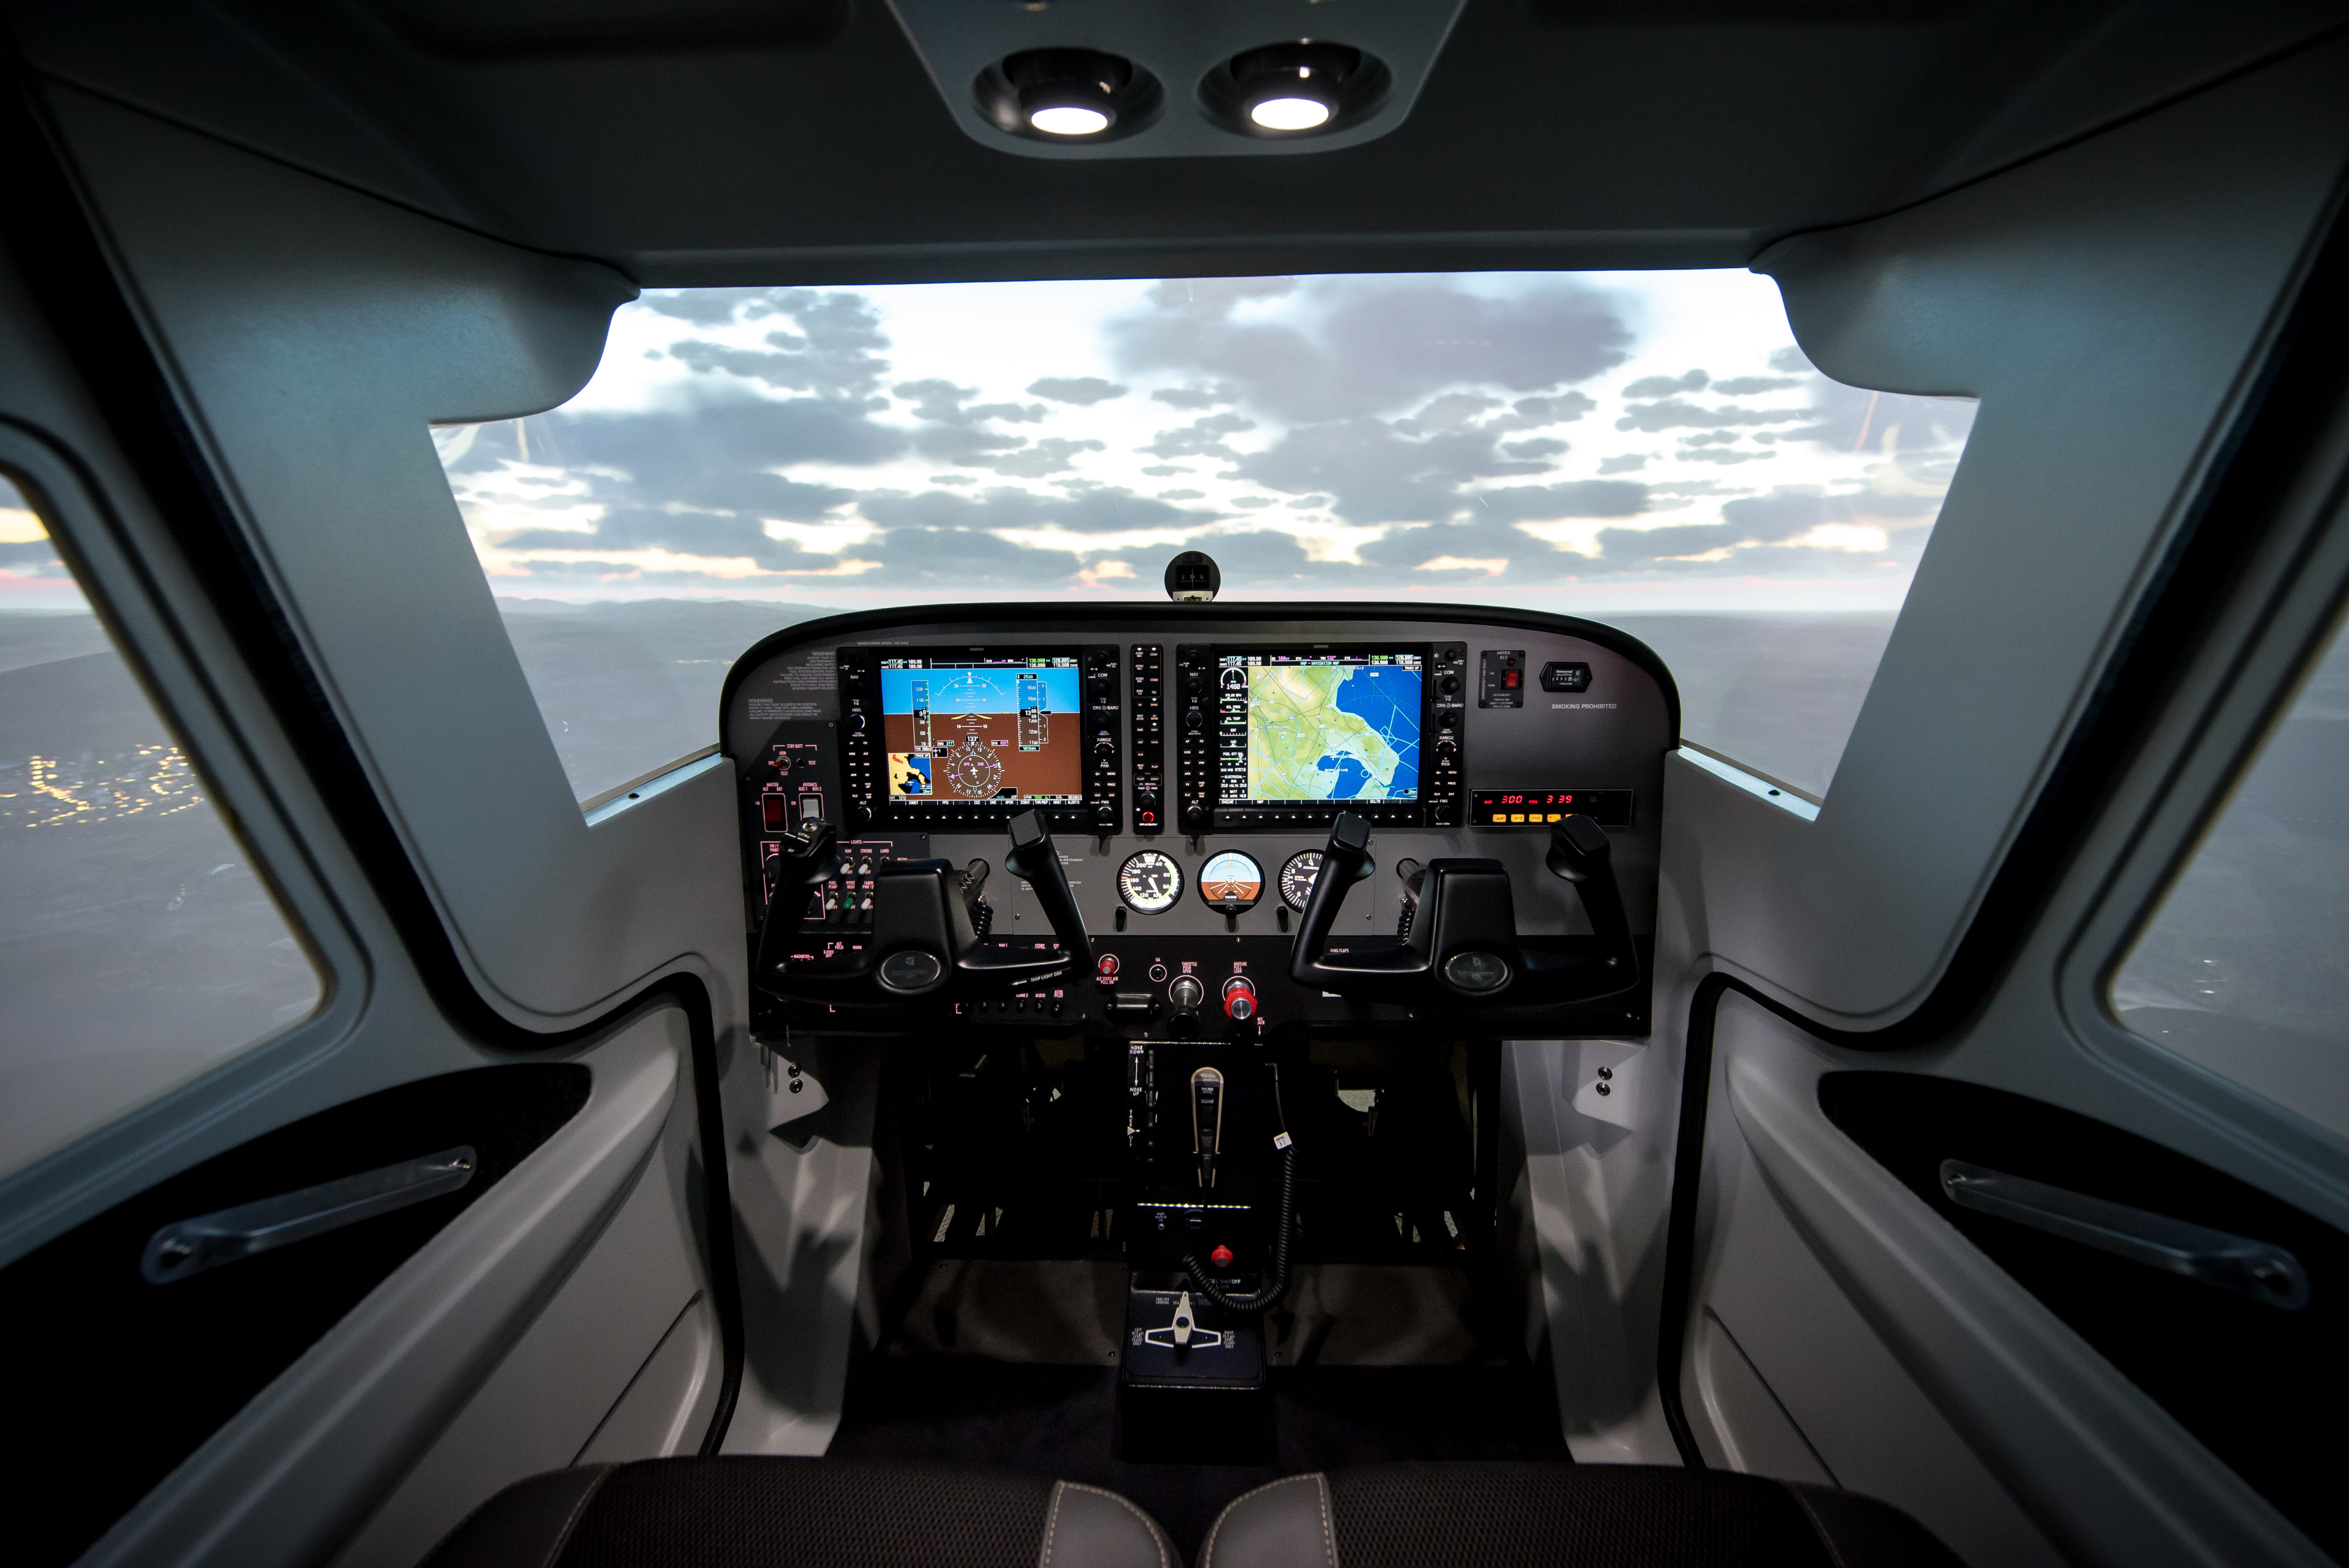 Flight Simulators